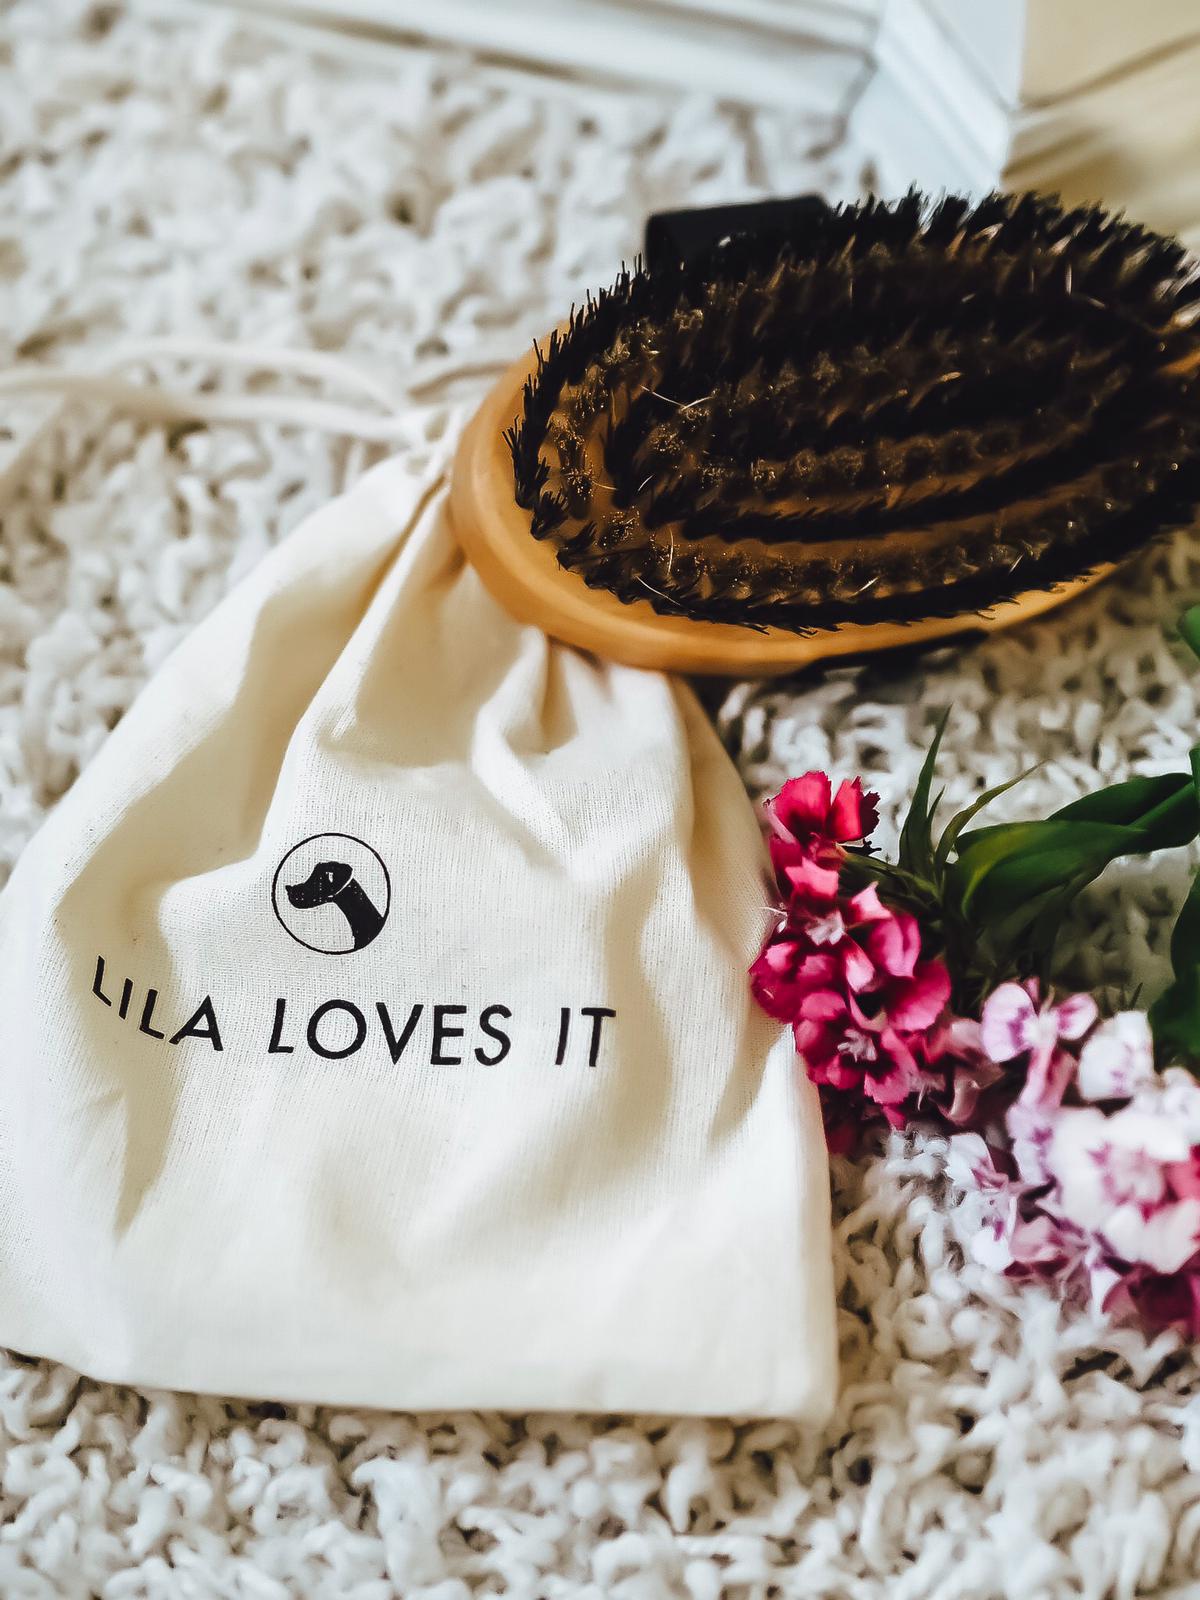 Alle tollen Produkte von Lila Loves It sind nachweisbar nur aus natürlichen Inhalten gefertigt. Hier mehr dazu in der Kategorie "Dog Stuff" auf dem Blog !